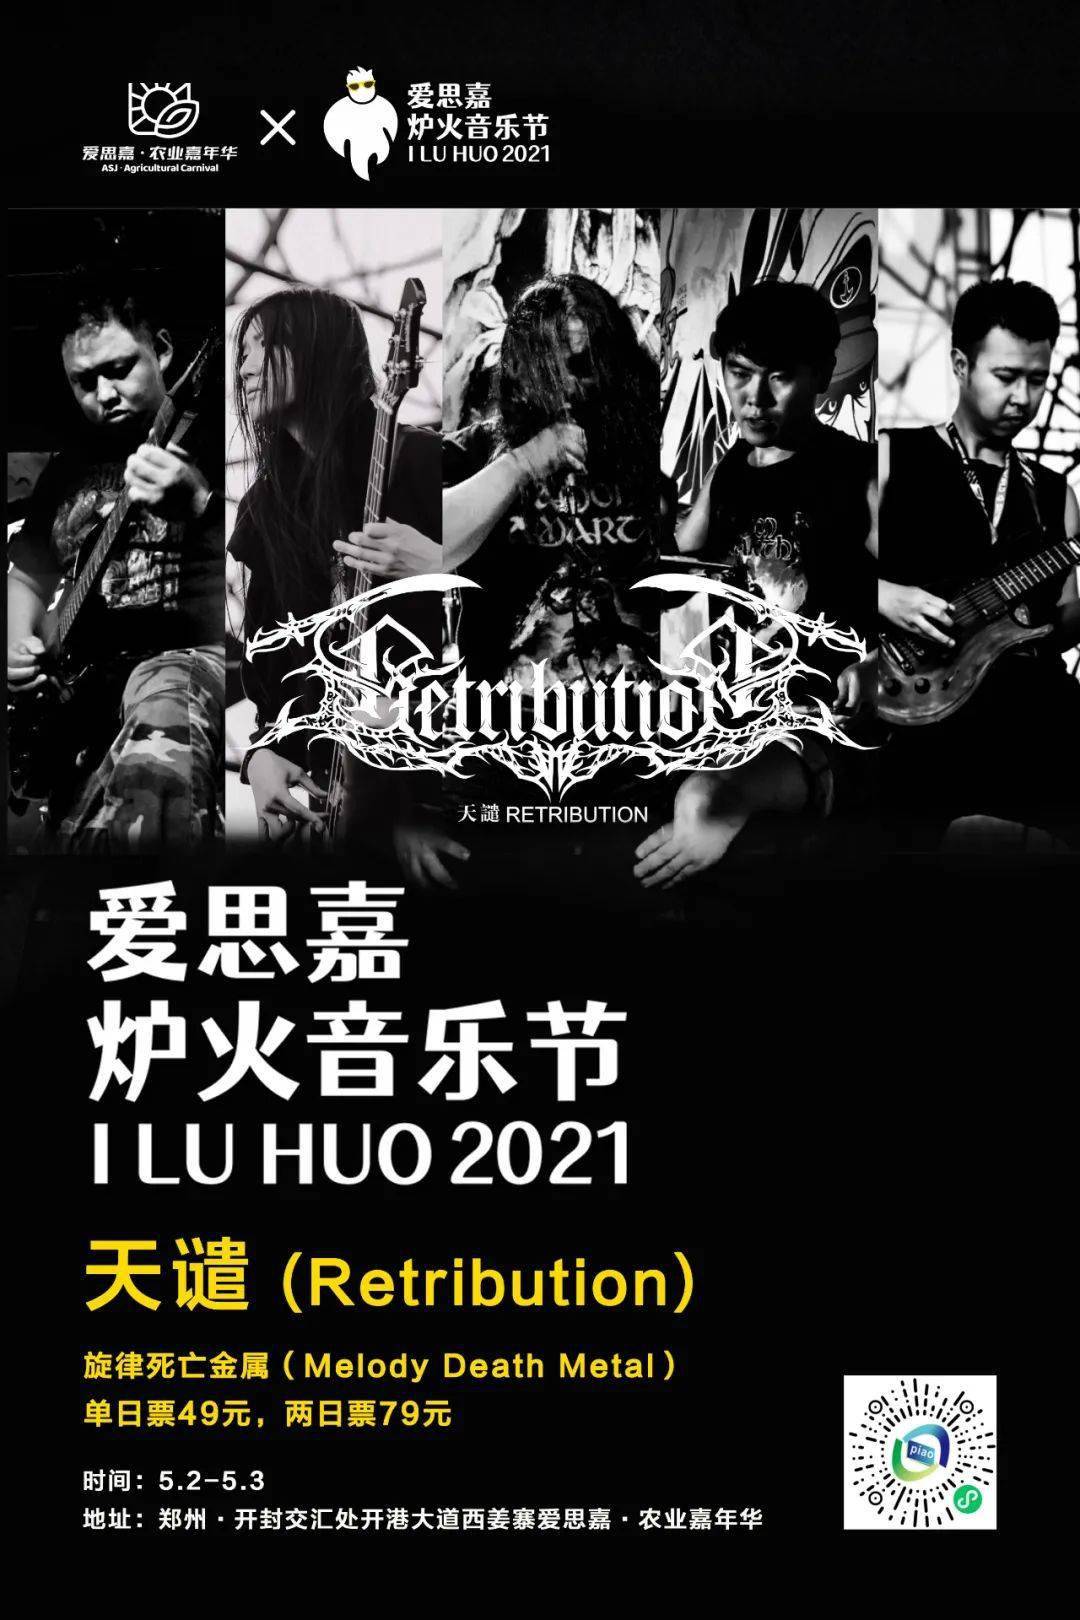 天谴乐队成立于 2015 年,风格以旋律金属为主,主题包括汉族历史,汉族